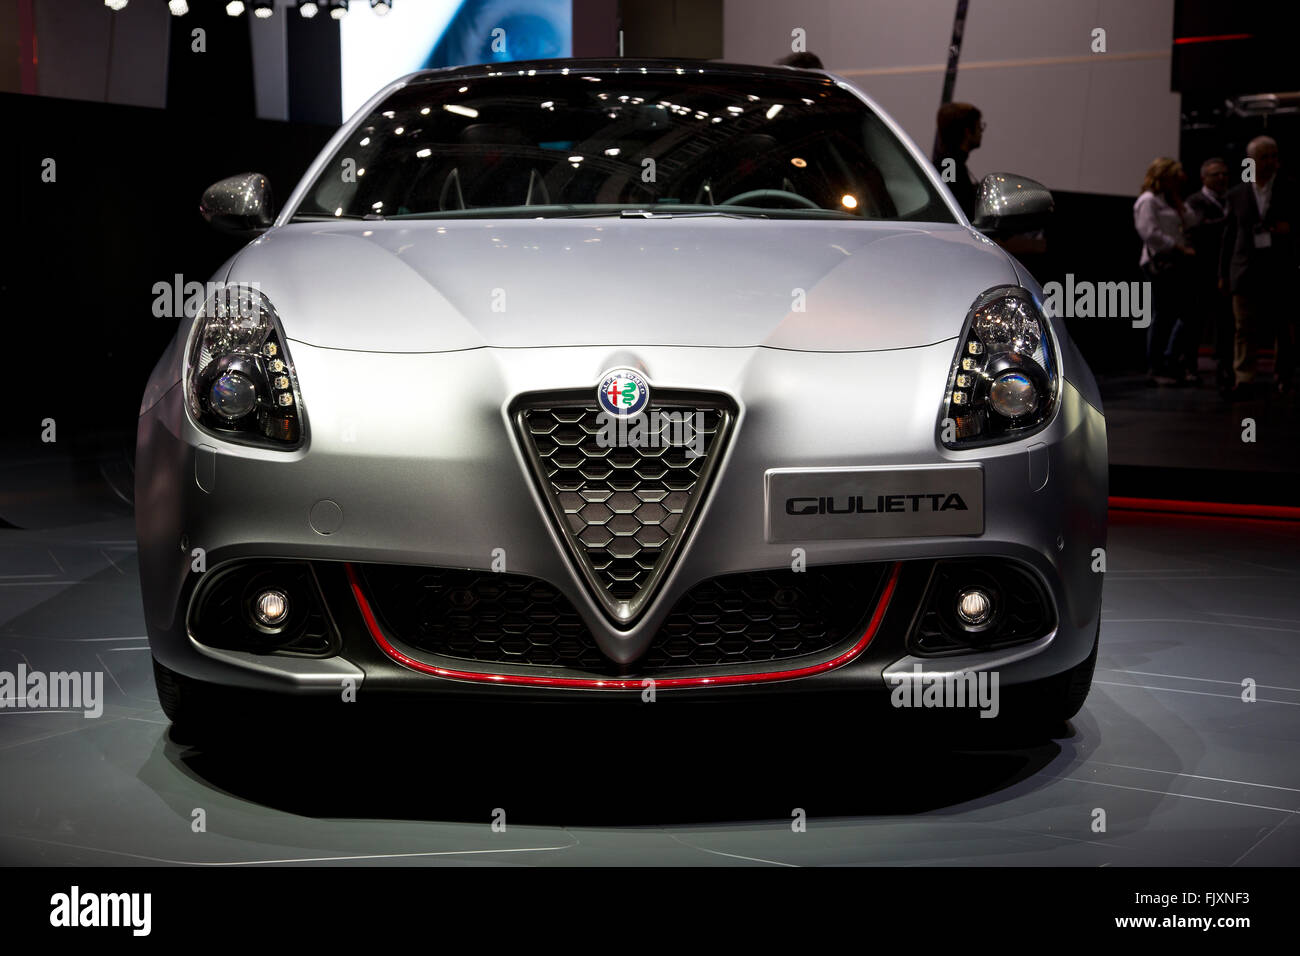 Alfa Romeo Giulietta voiture berline au Salon de Genève 2016 Banque D'Images